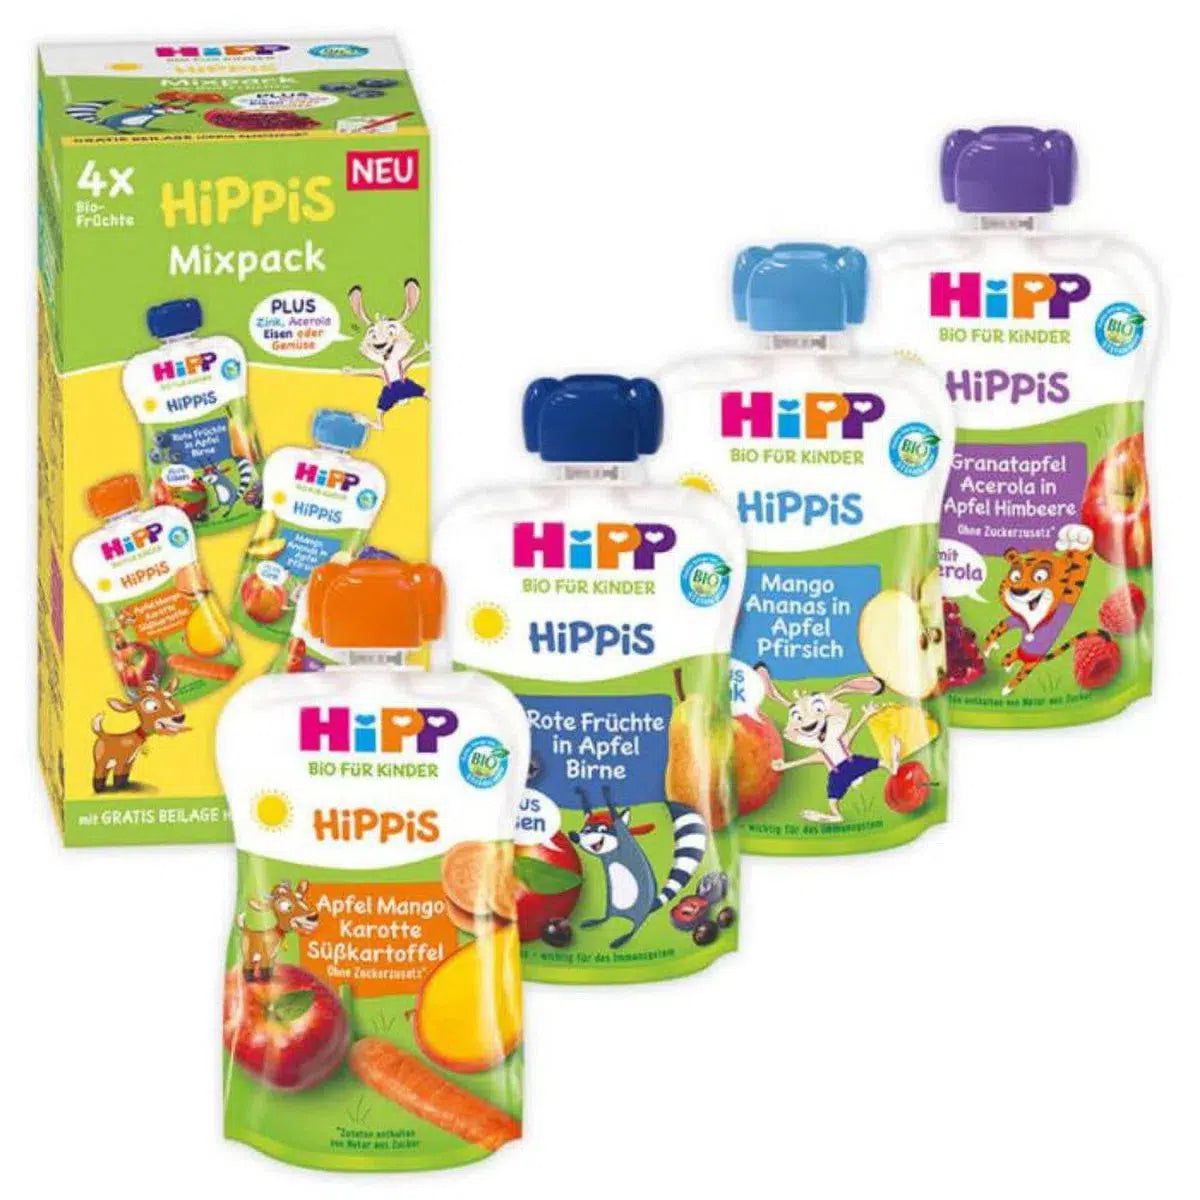 HiPP Fruit Pouches Hippis Mixpack (12+ Months) - 4 Pouches